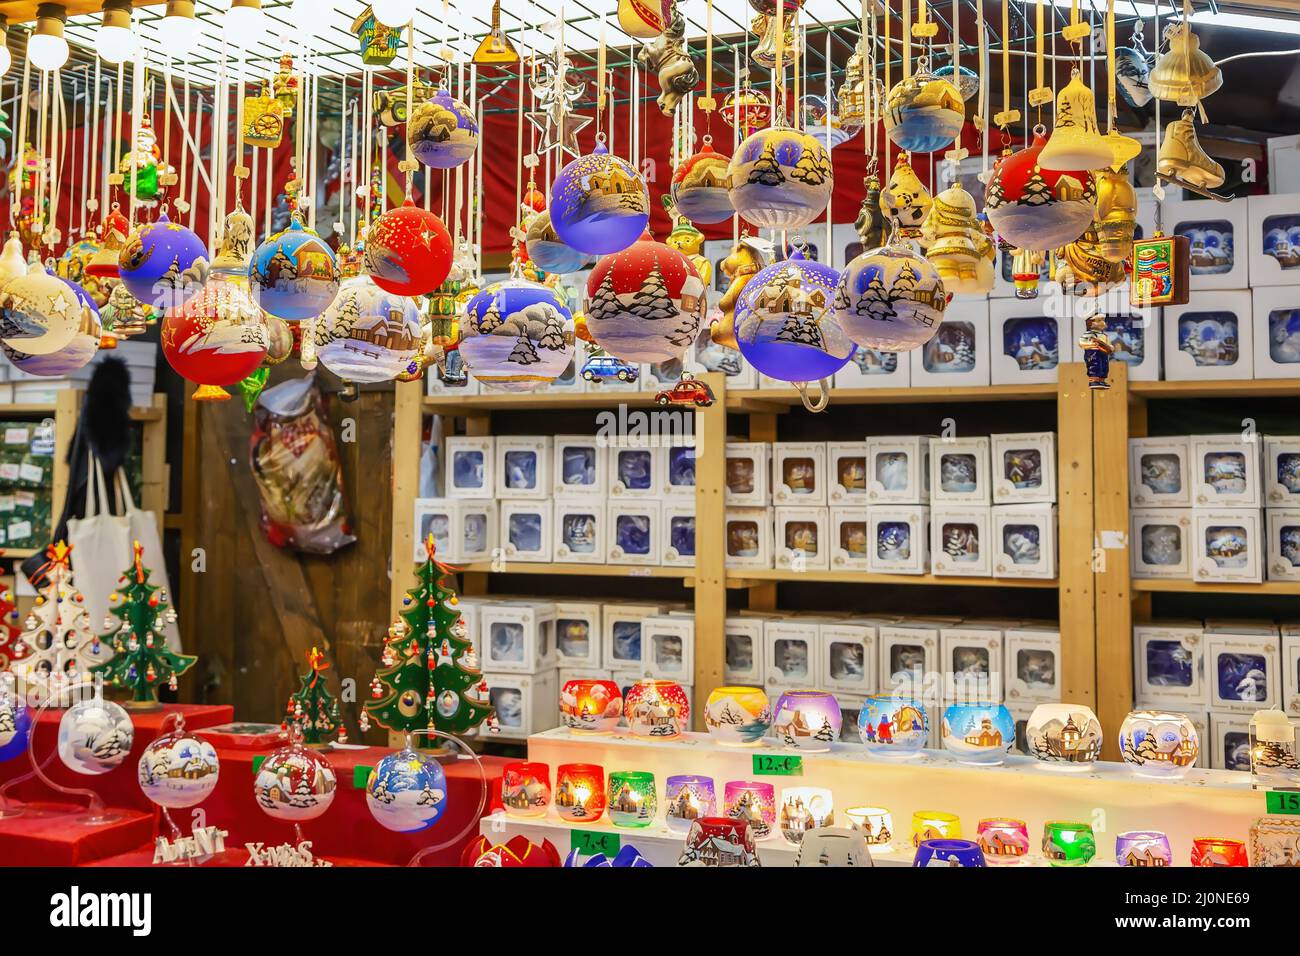 Jouets et décorations sur le marché de Noël, Allemagne Banque D'Images